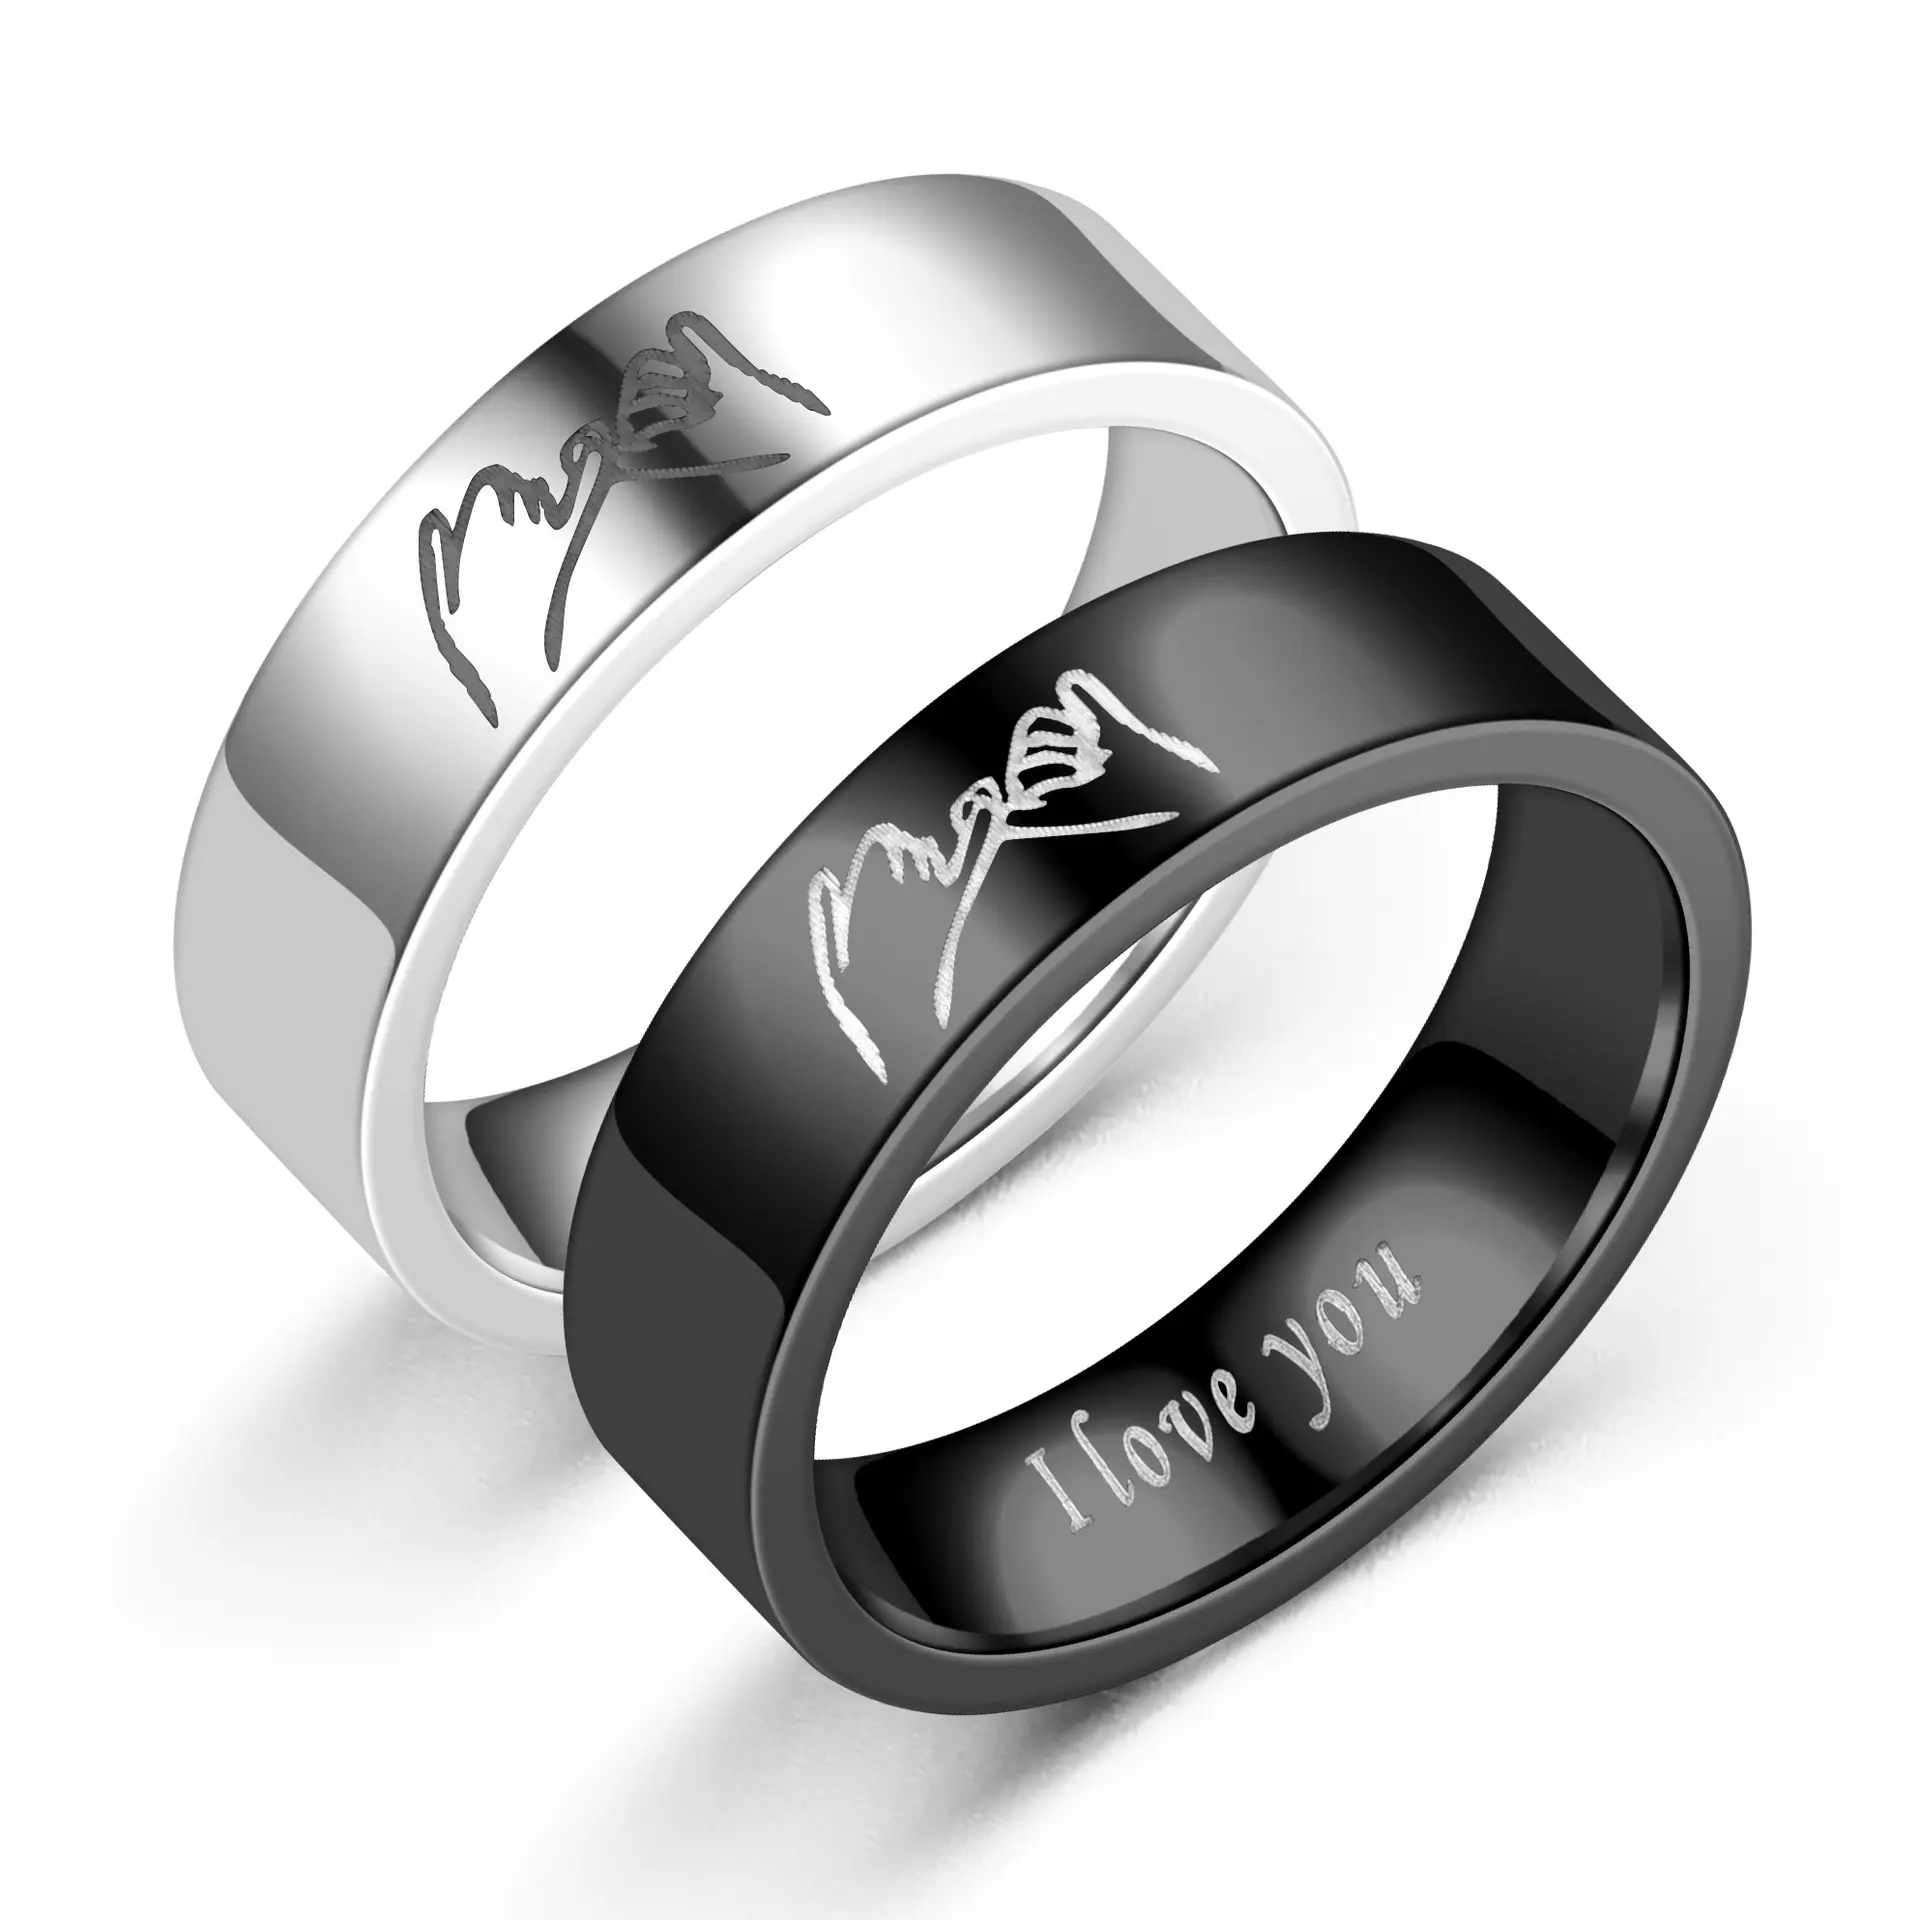 Изящные ювелирные кольца из титановой стали в стиле ретро с надписью «Love I love you», парные кольца ручной работы, оптовая продажа